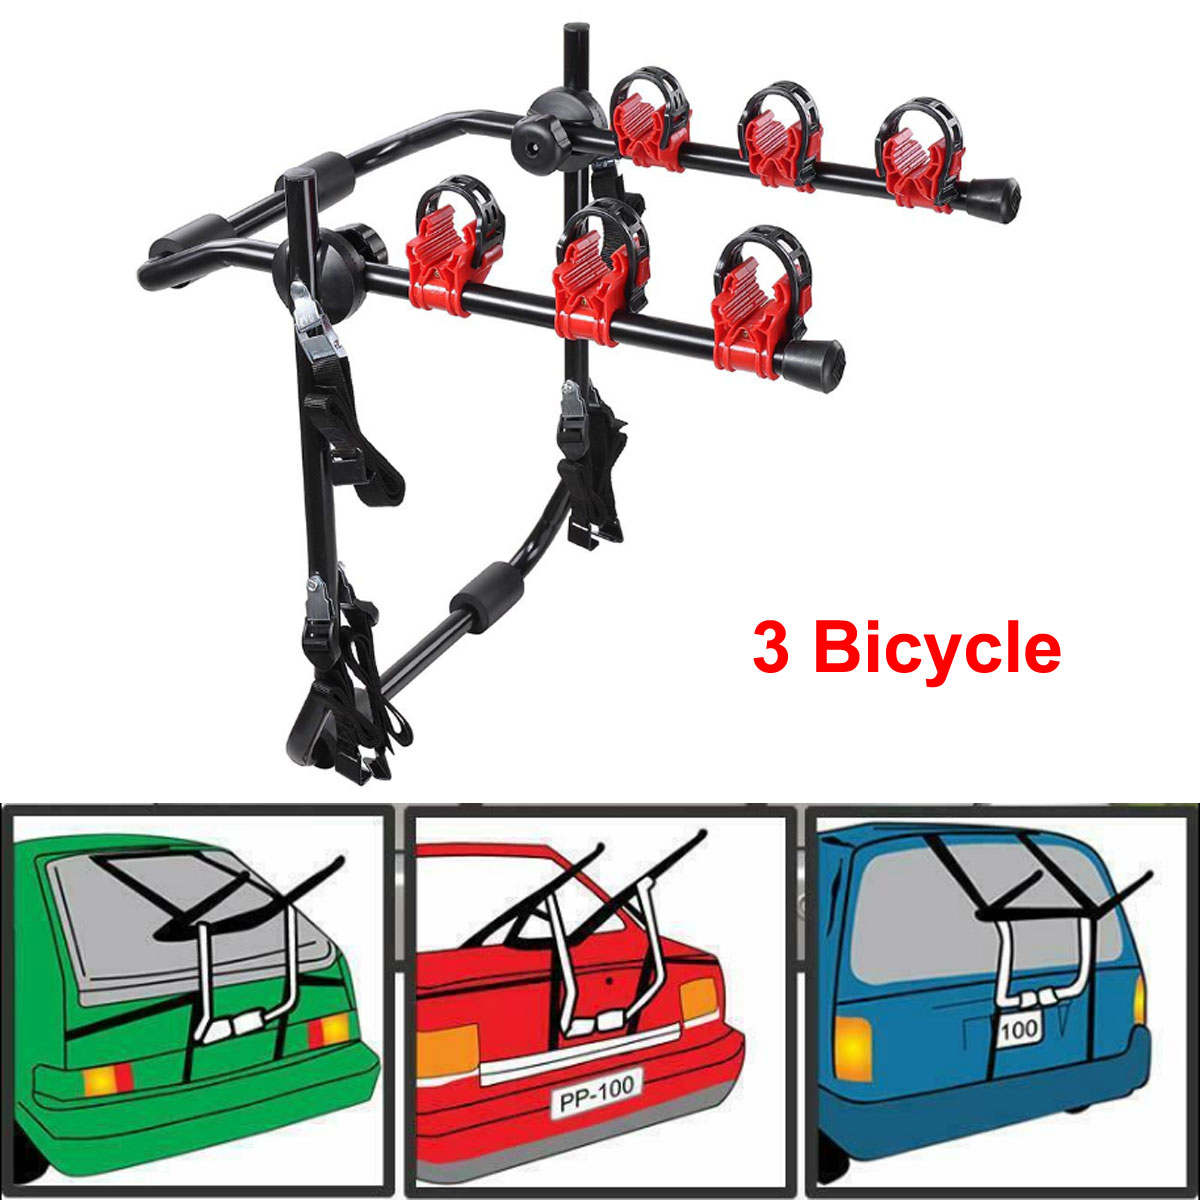 Universal 3 Bike Bicycle Carrier Car Rack Holder Fits Saloon Hatchback Estate